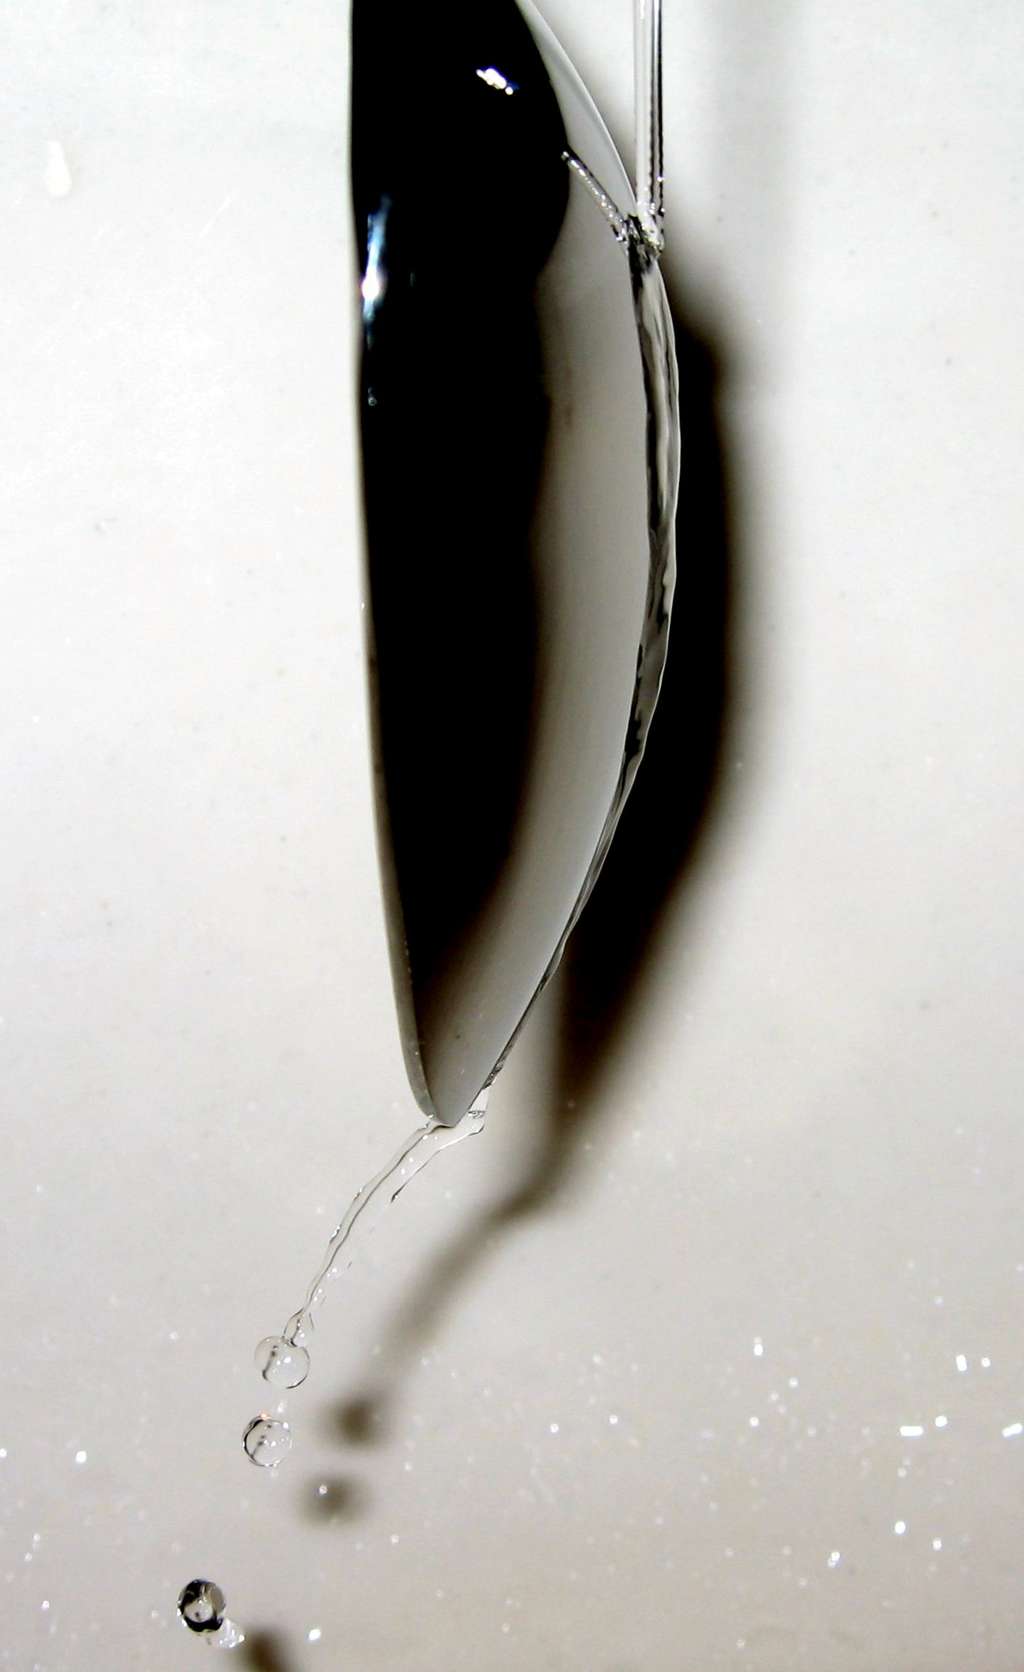 Sous l’effet Coanda, lorsqu’un filet d’eau effleure une cuillère, il a tendance à venir s’y coller au lieu de poursuivre son écoulement en ligne droite. © Axda0002, Wikipédia, CC by-sa 2.5